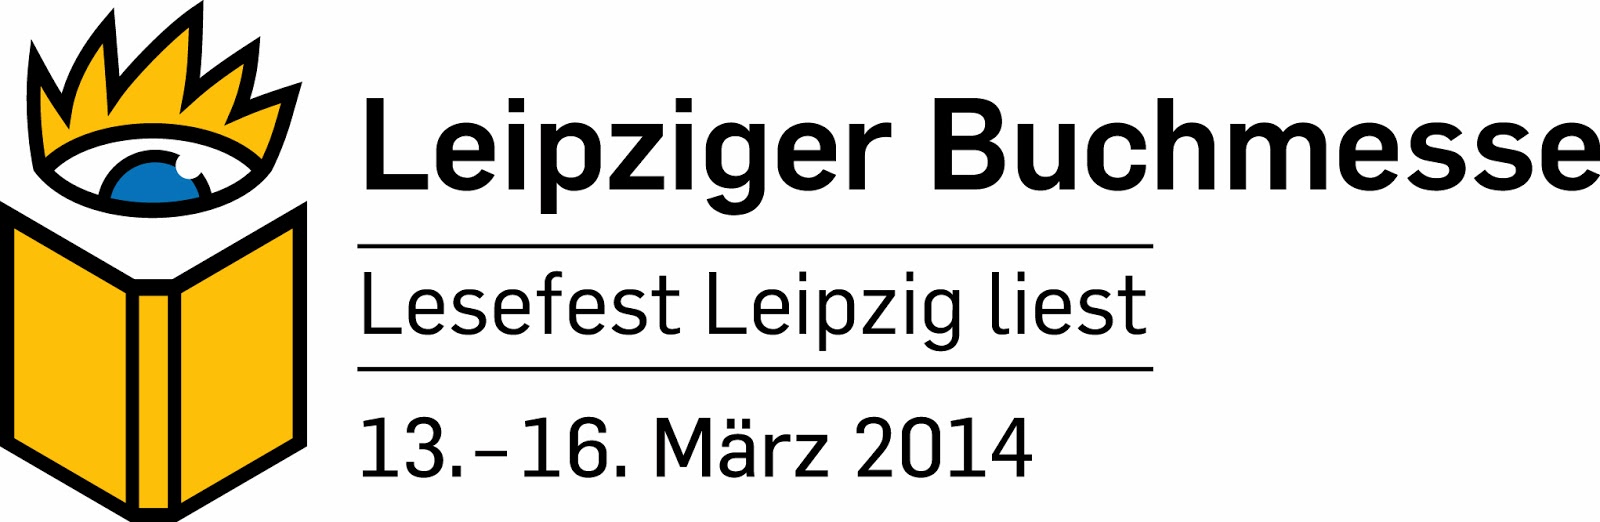 Leipziger Buchmesse 2014 – Ich bin dabei! {Buchmesse}